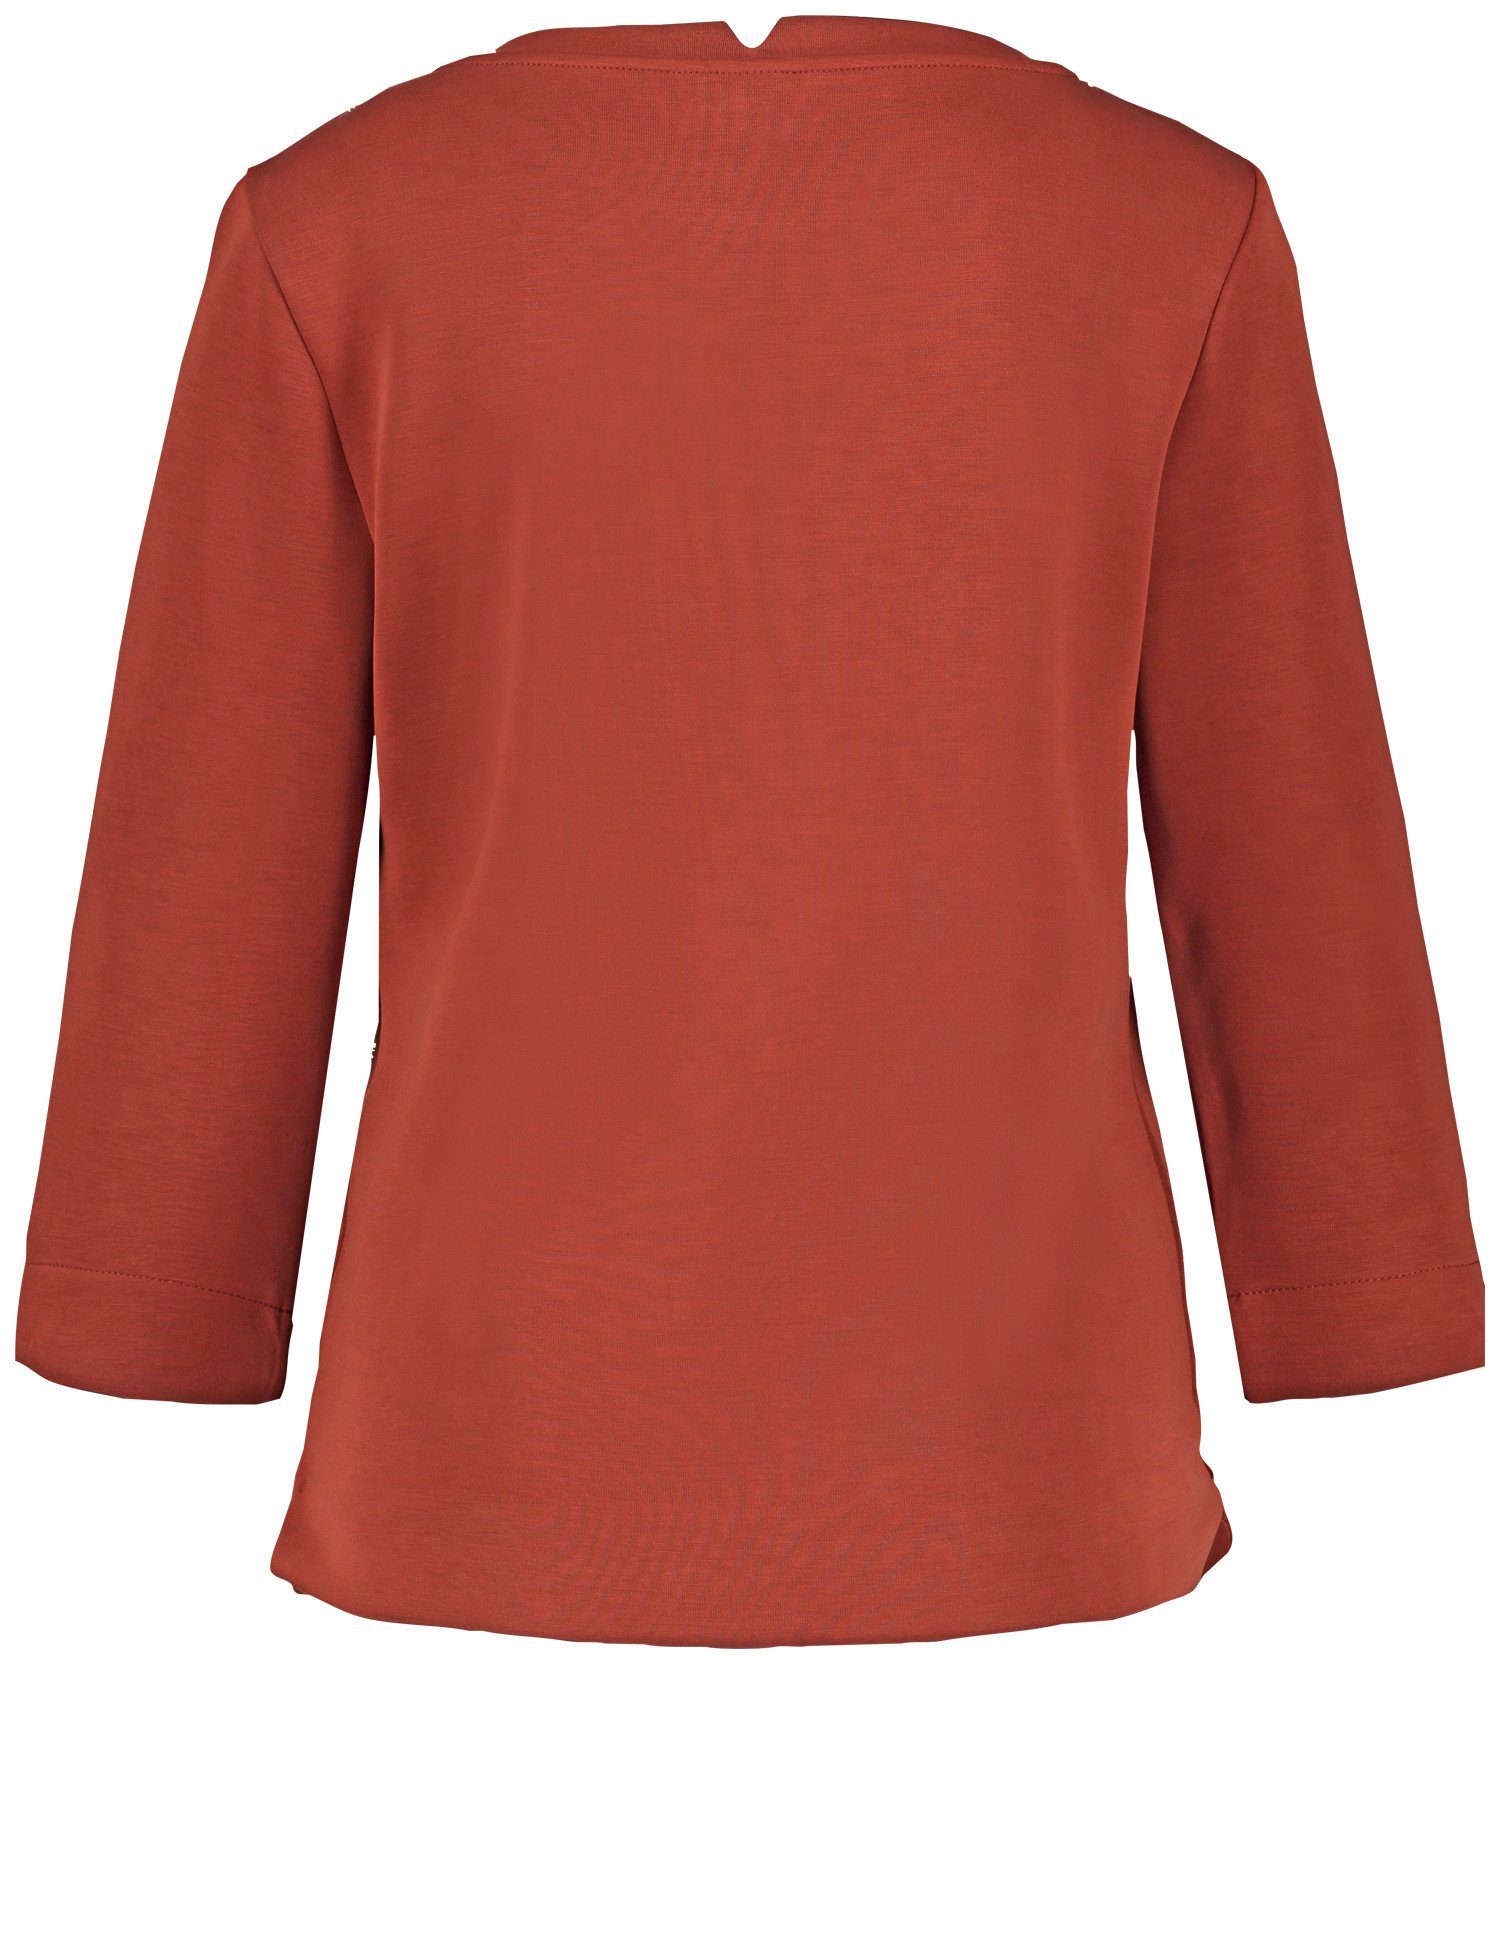 GERRY WEBER Lava 3/4 aus Arm Shirt 3/4-Arm-Shirt sandwashed Jersey